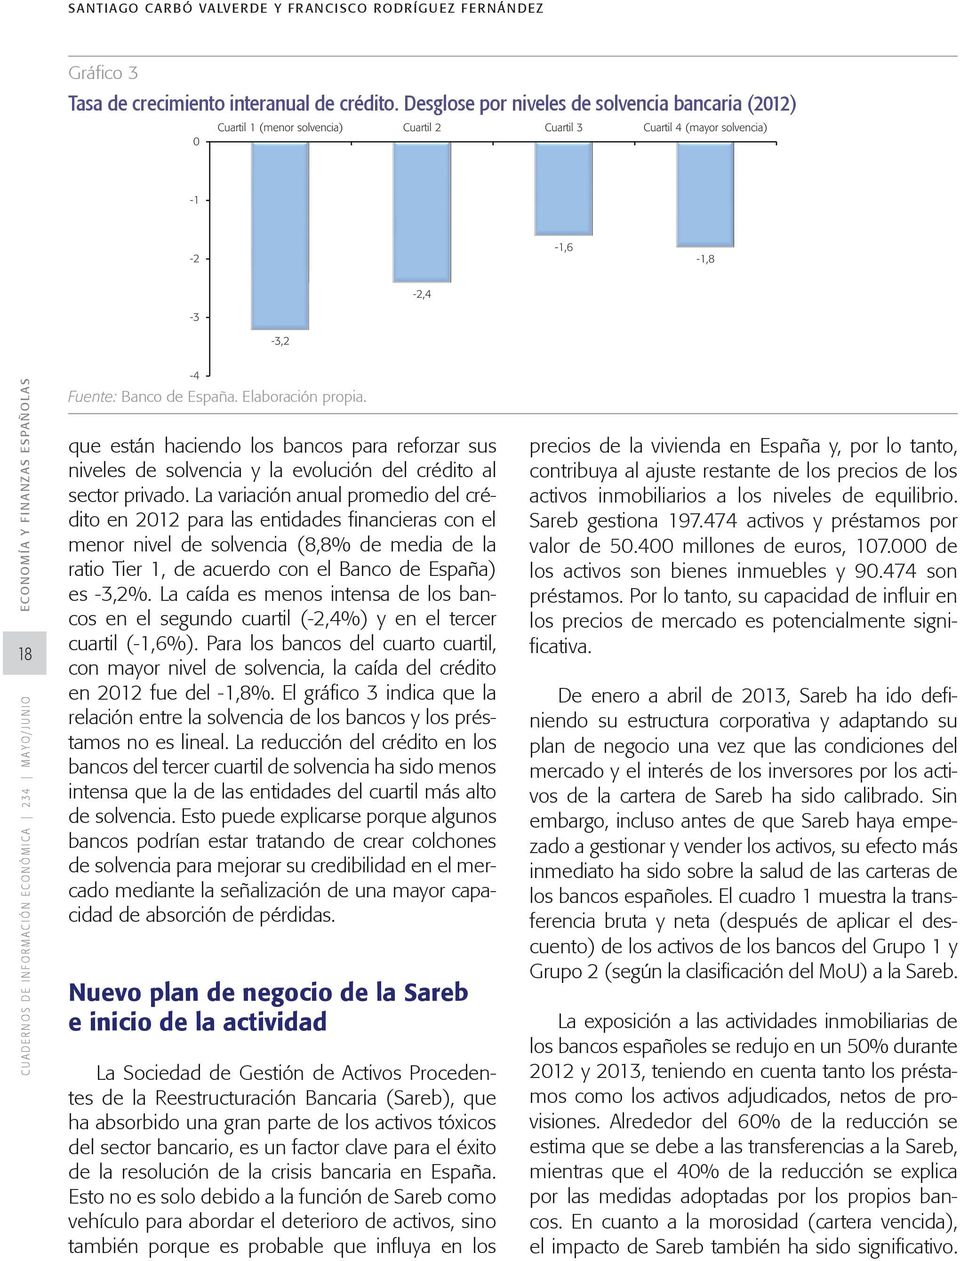 La variación anual promedio del crédito en 2012 para las entidades financieras con el menor nivel de solvencia (8,8% de media de la ratio Tier 1, de acuerdo con el Banco de España) es -3,2%.